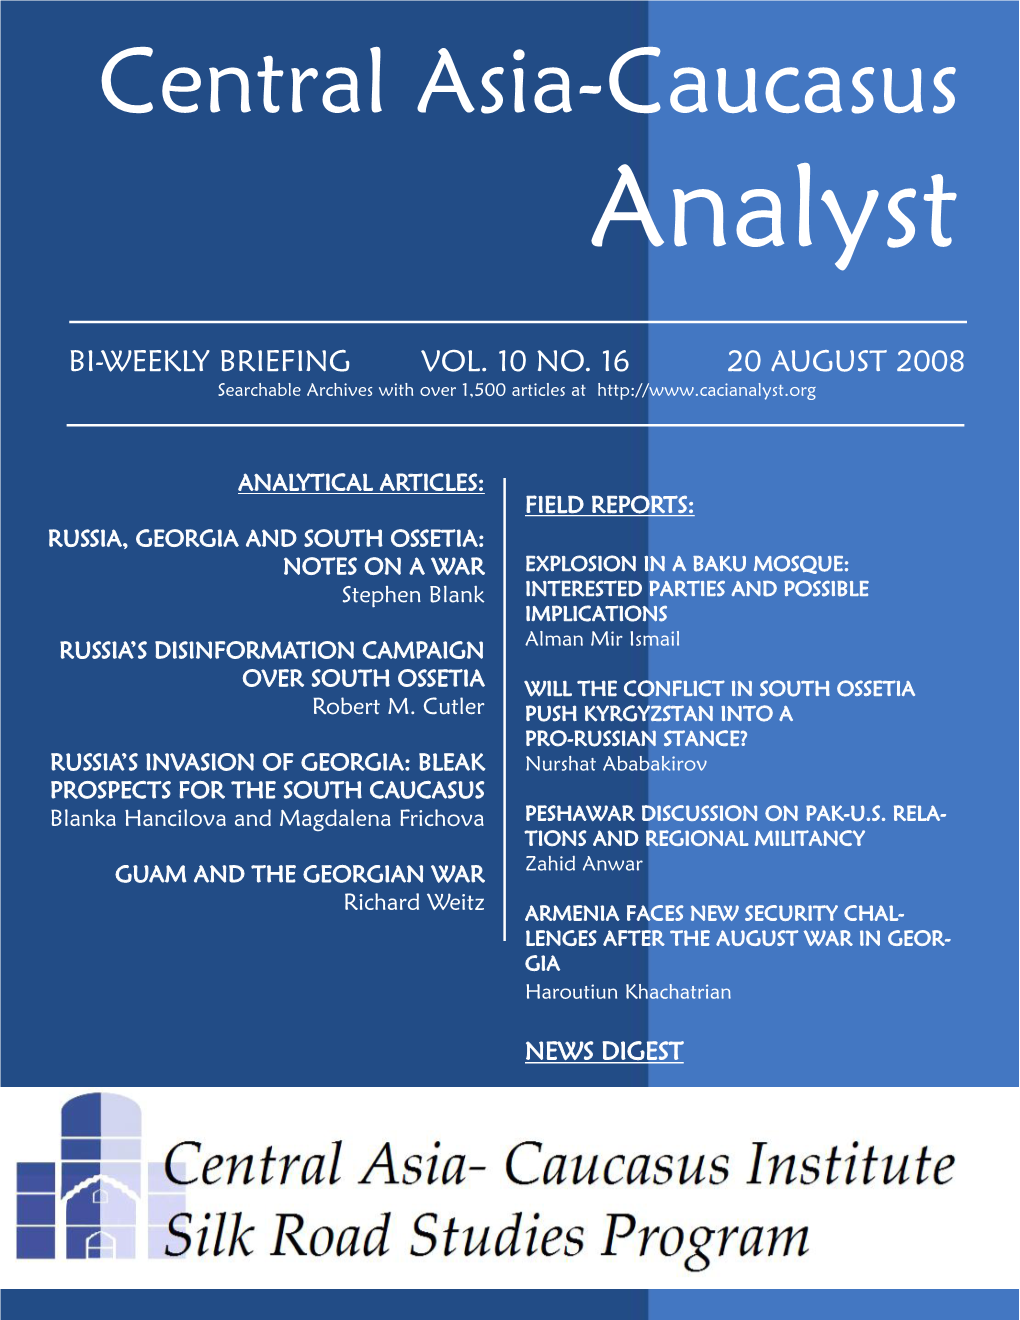 Central Asia-Caucasus Analyst Vol 10, No 16